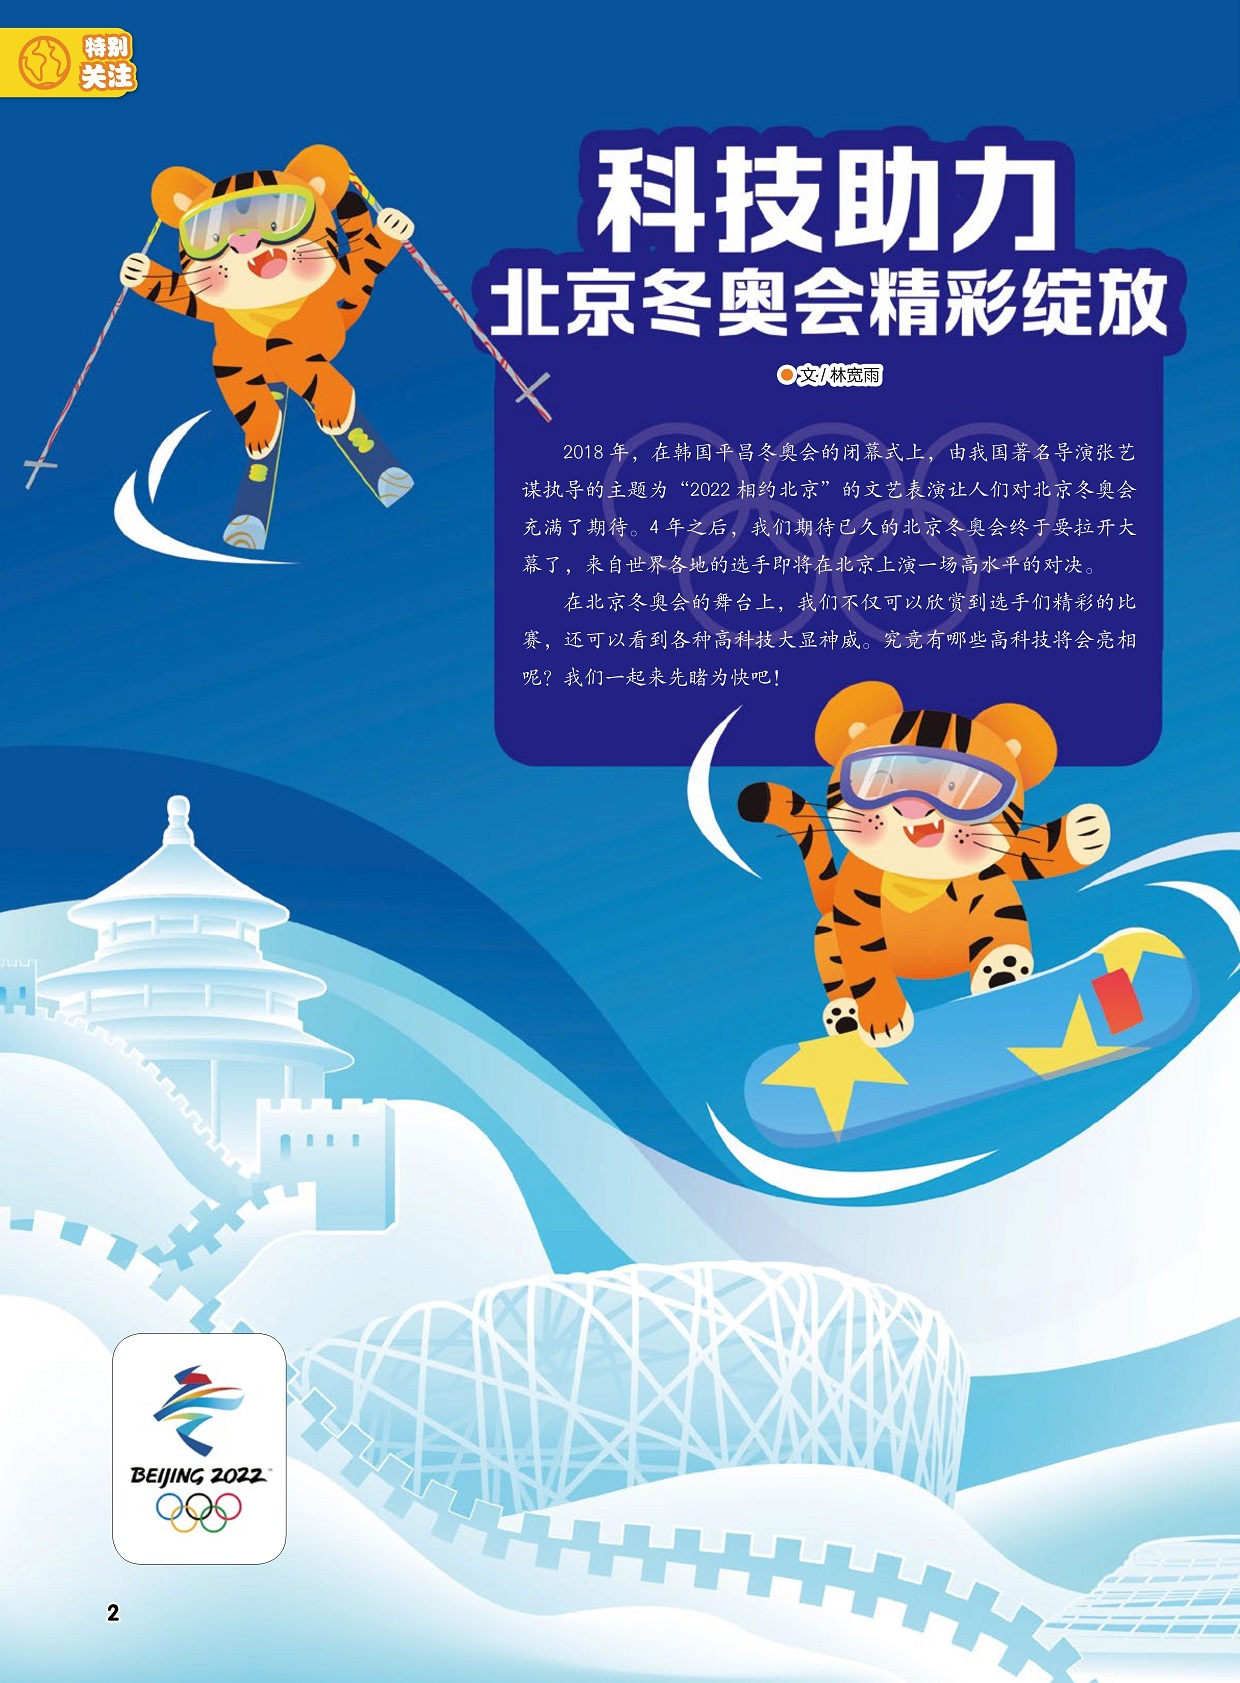 来自世界各地的选手即将在北京上演一场高水平的对决,高科技亮相北京冬奥会